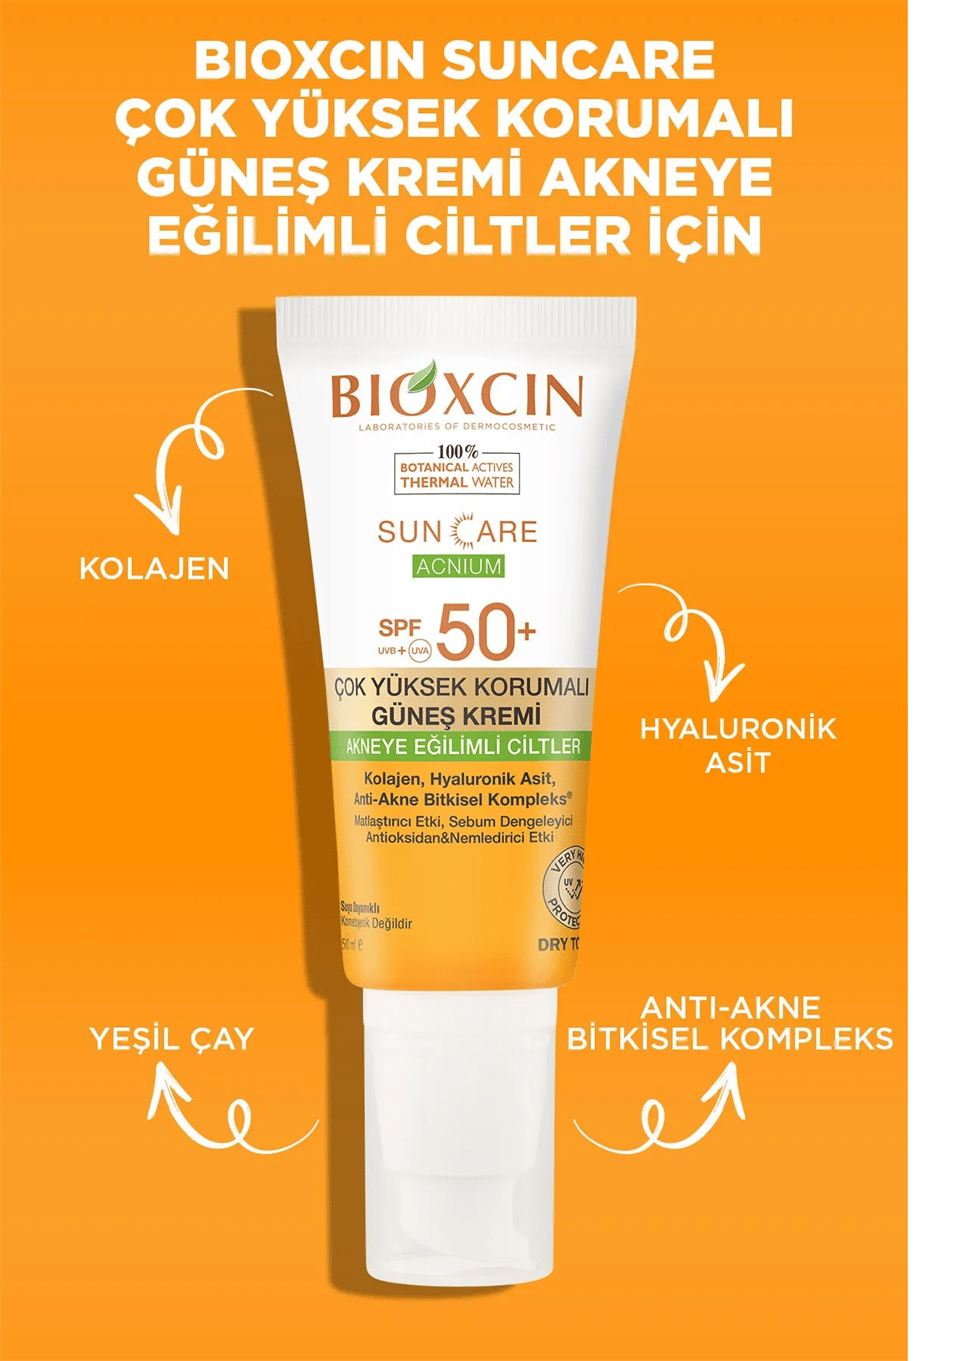 Bioxcin Sun Care Akneye Eğilimli Ciltler Için Güneş Kremi 50 Spf - Akne,  Dry Touch, Mat 50